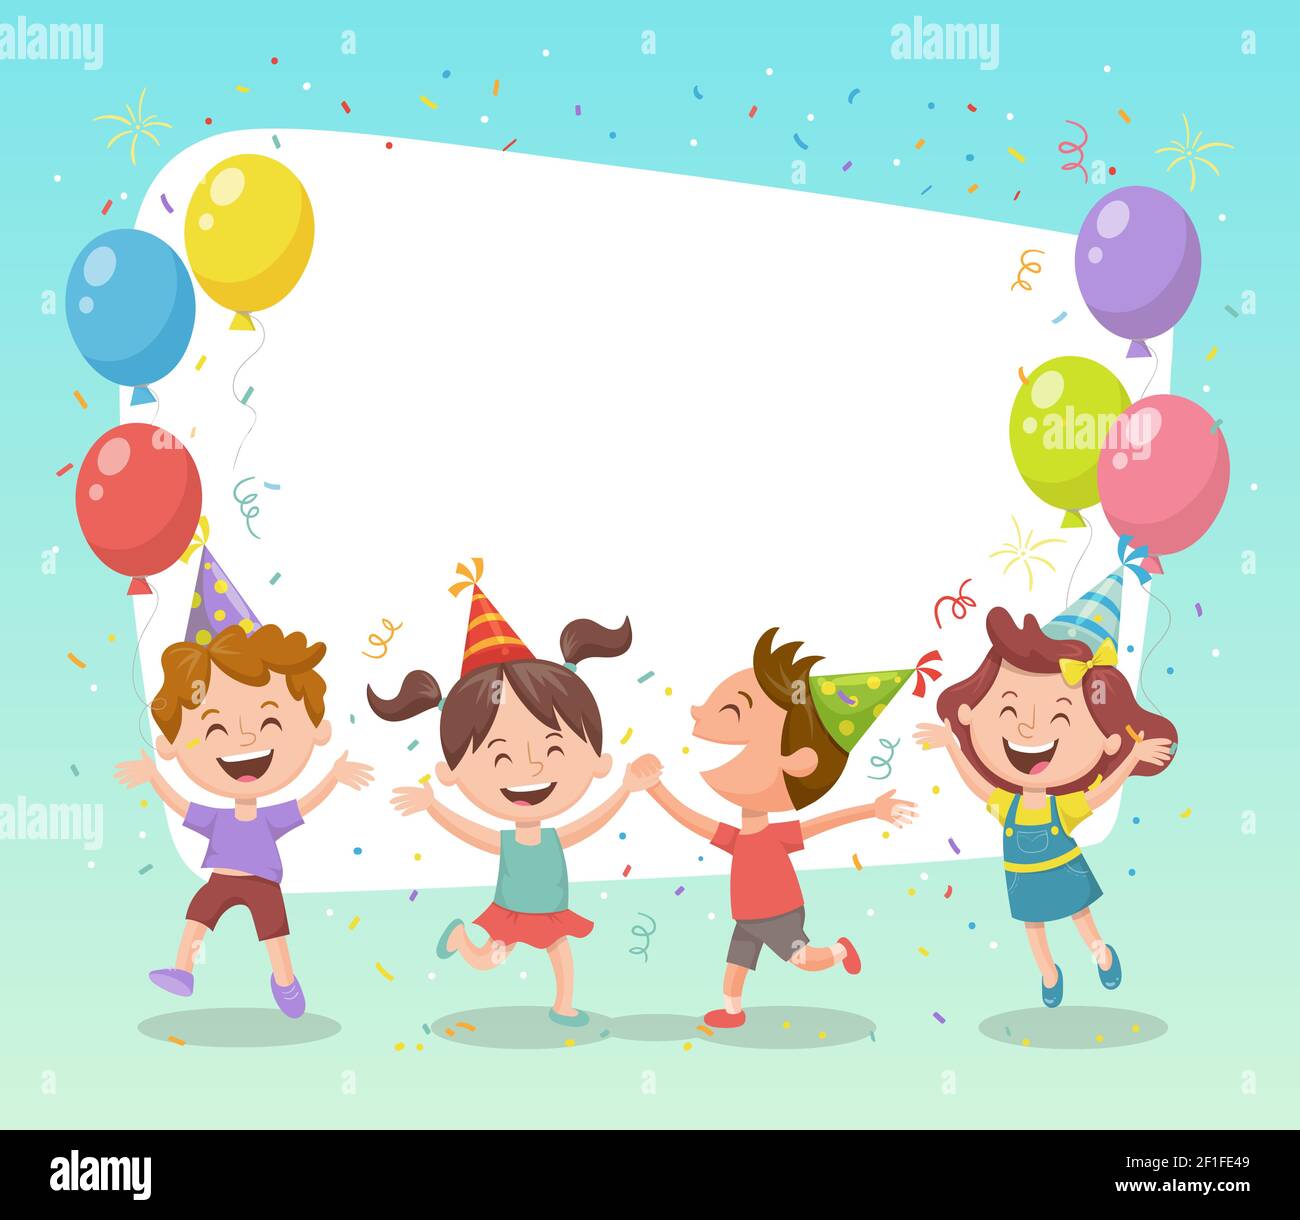 Groupe d'enfants heureux célébrant une fête avec des ballons, des chapeaux de fête et des confettis. Modèle pour créer des cartes d'anniversaire, des invitations, des cadres photo et le verso Illustration de Vecteur